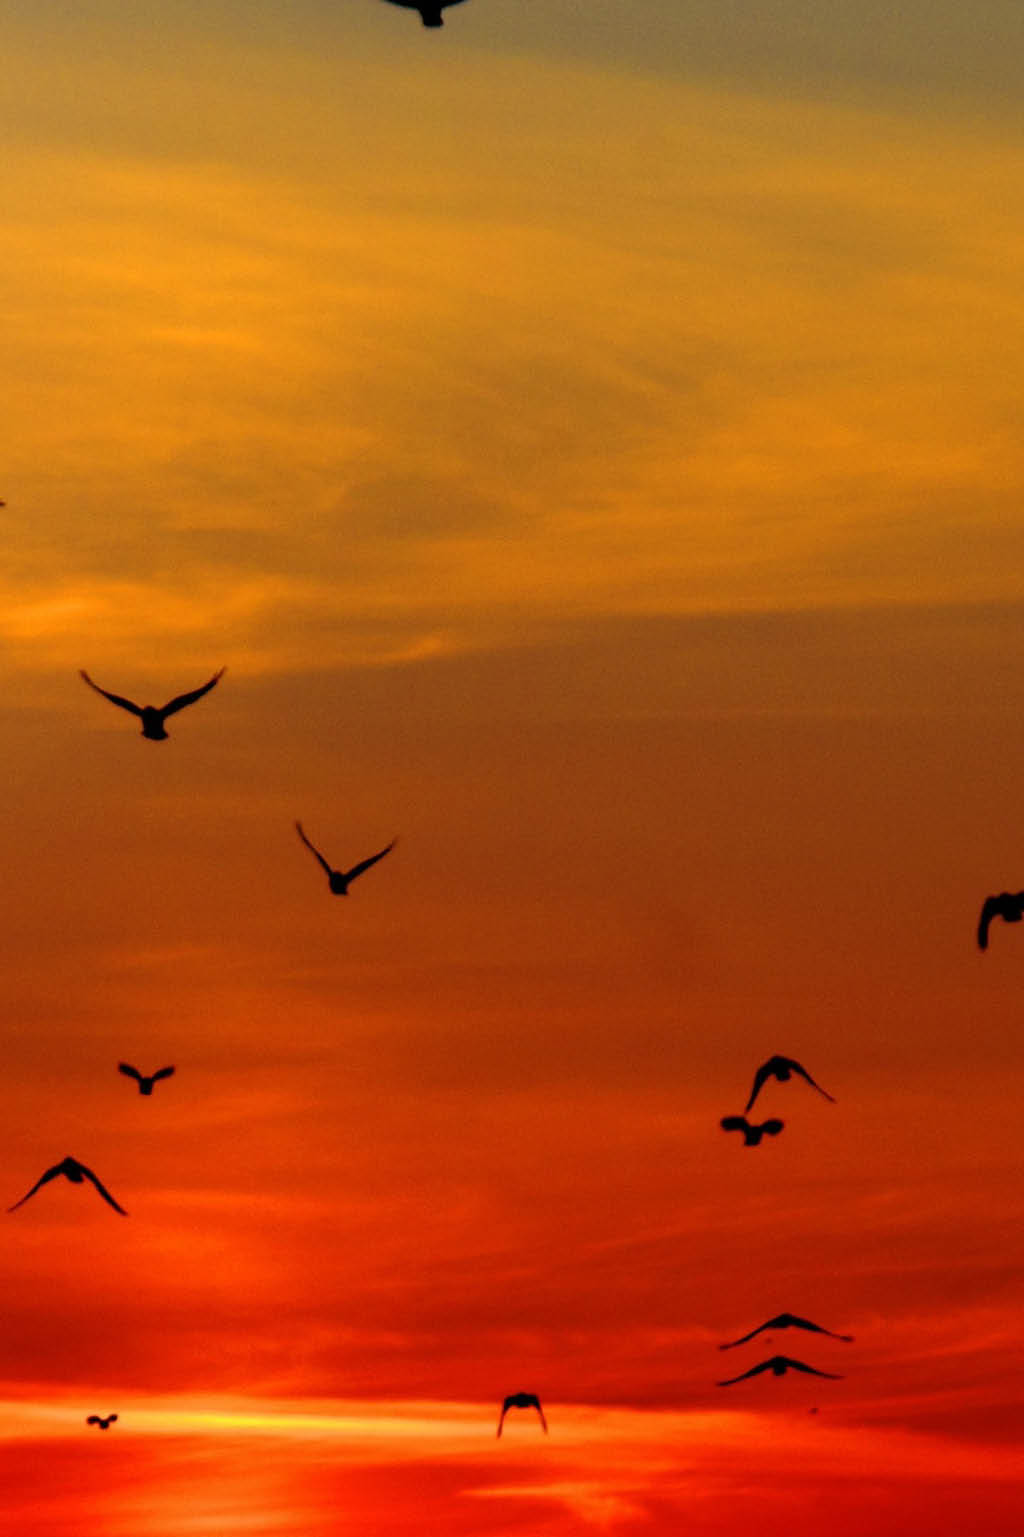 Flock of birds flying over sunset